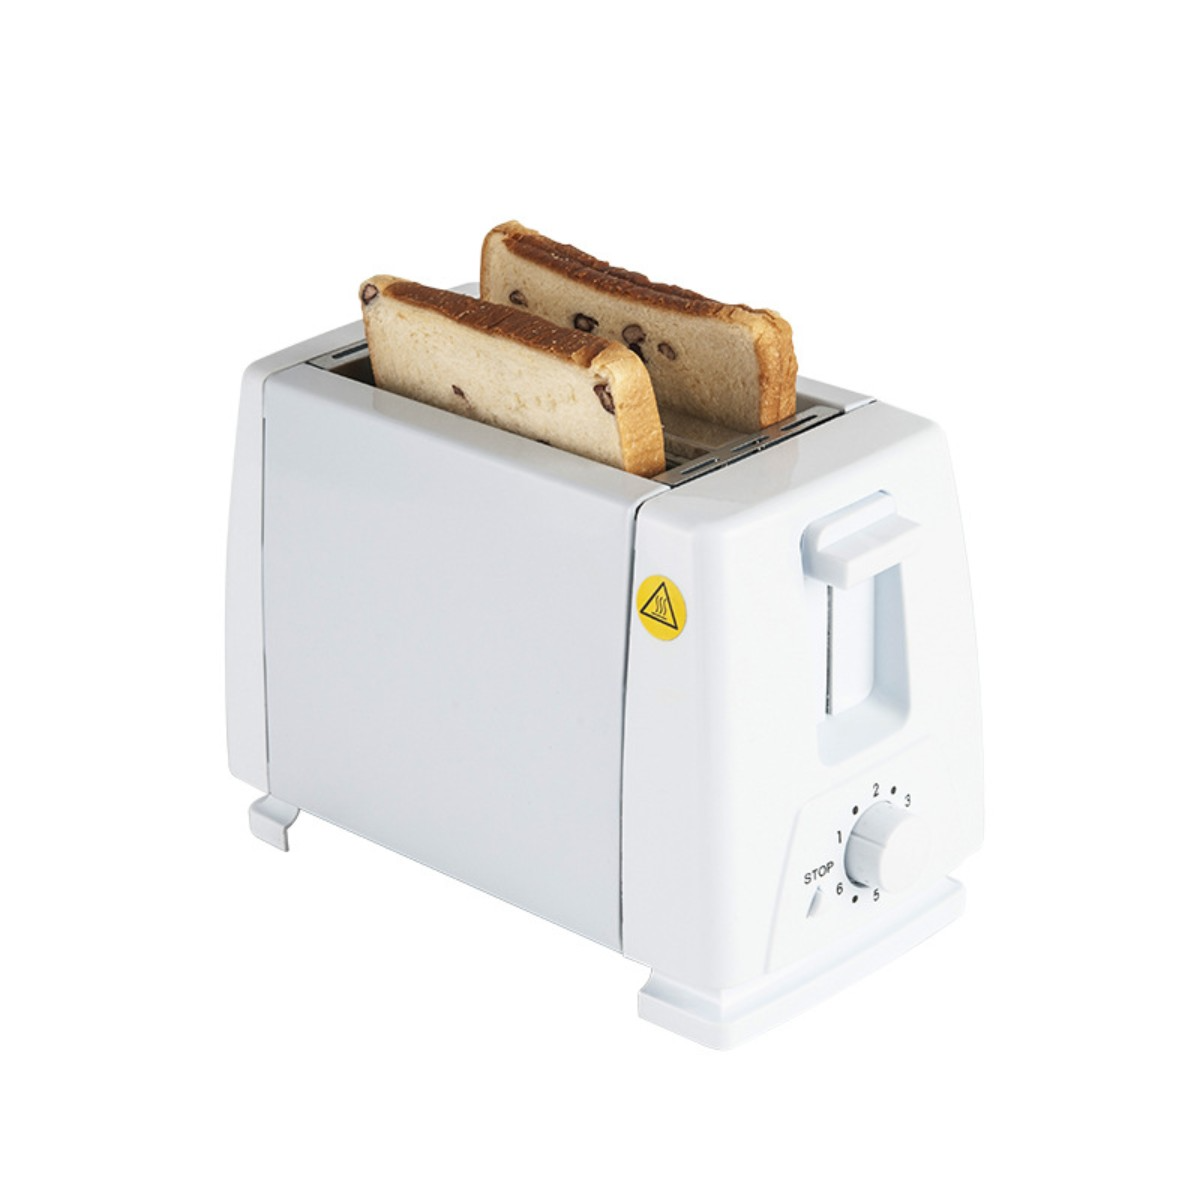 FEI Brotbackautomat 220V Weiß Toaster 2) Sandwich Toaster Weiß Watt, Schlitze: Frühstück Toaster Maker (750